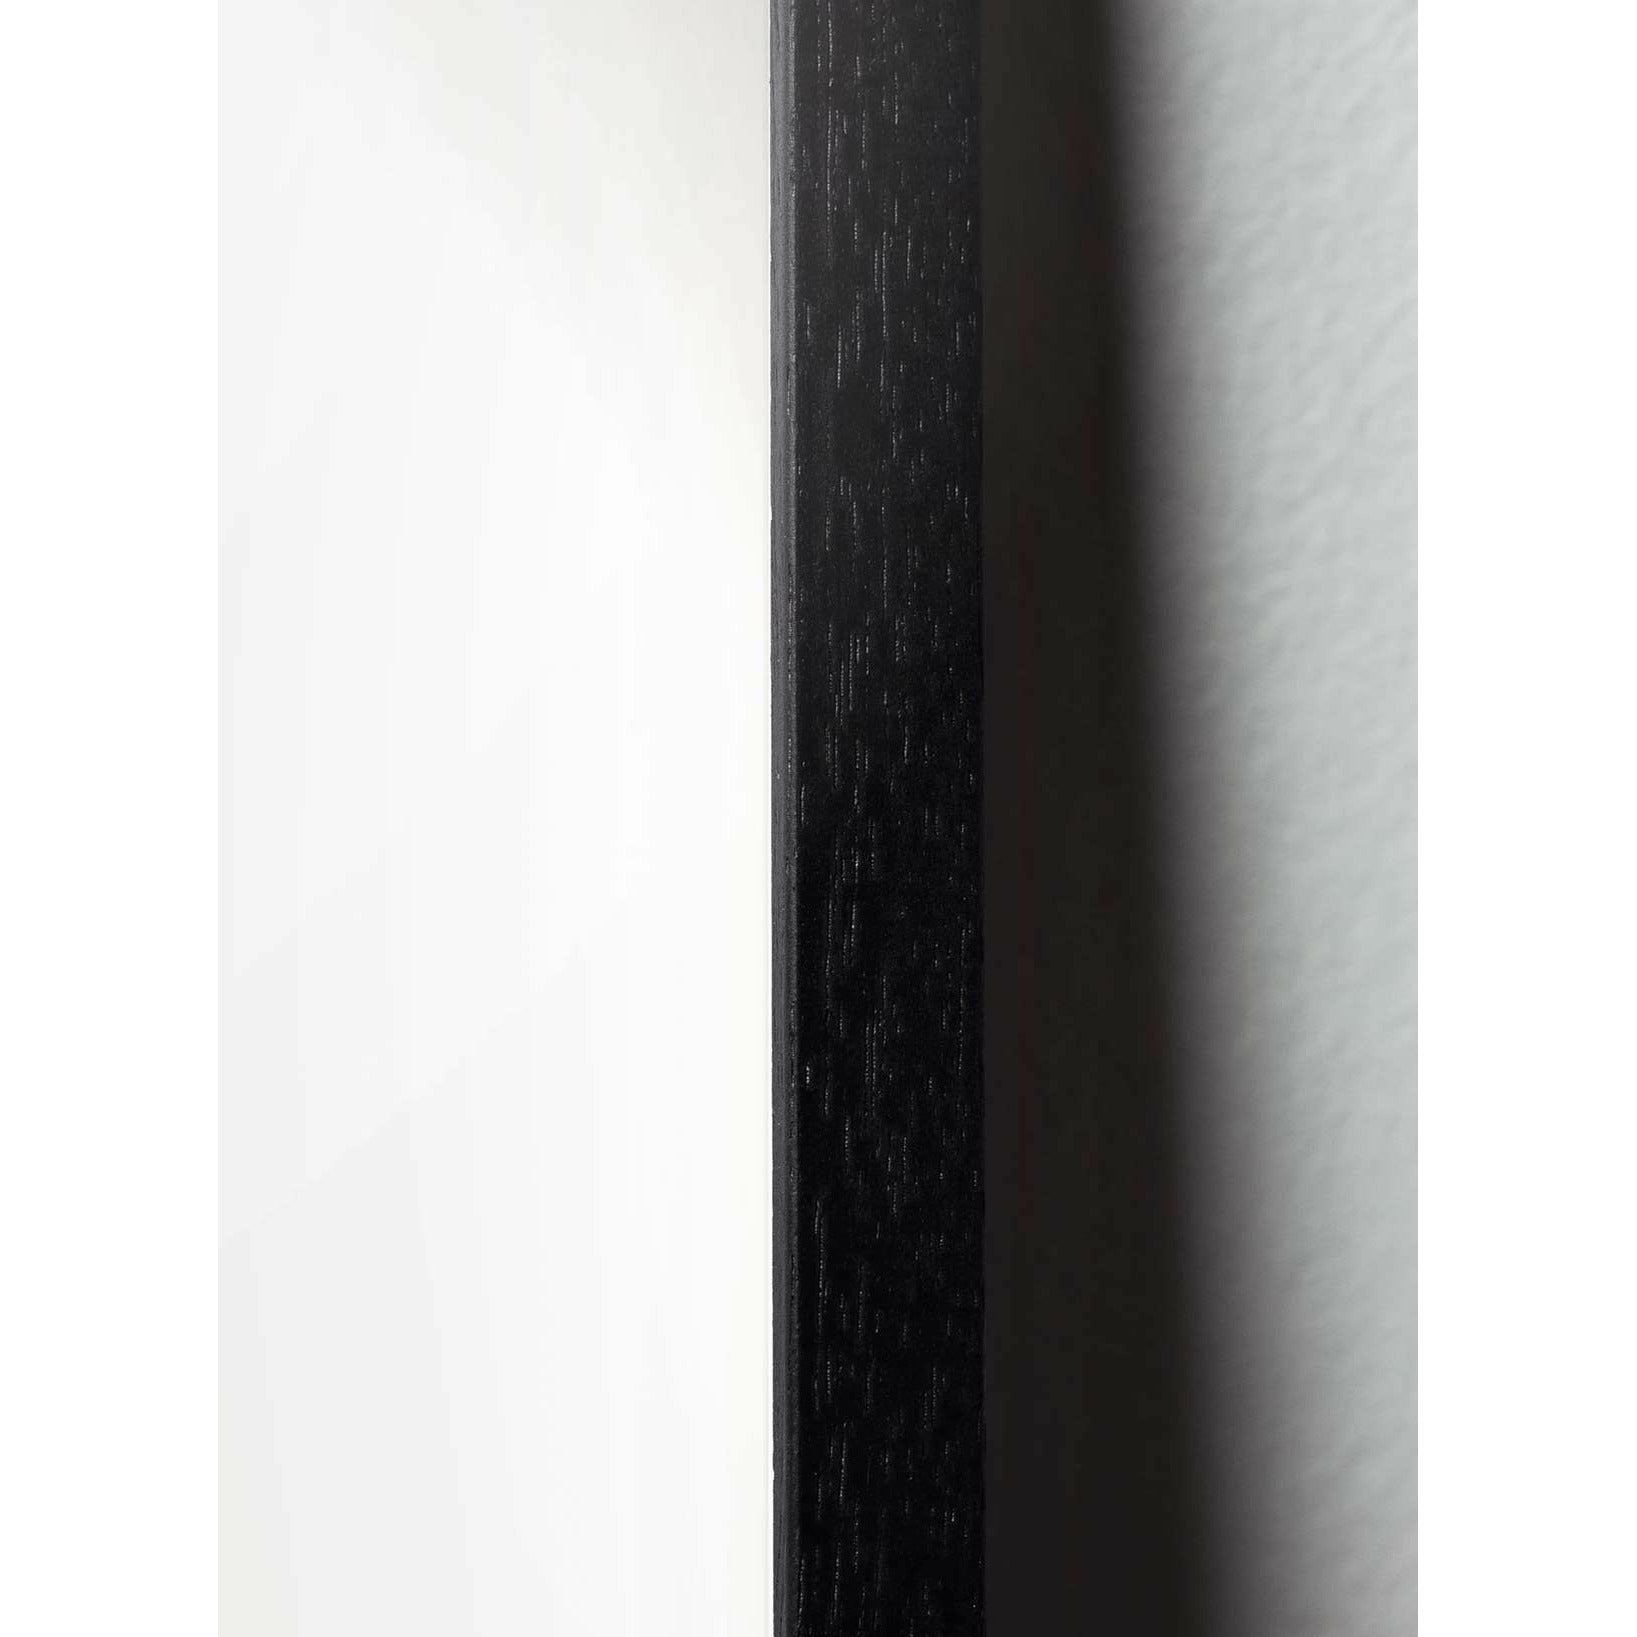 Cartel de diseño de diseño de oso de peluche, marco hecho de madera lacada negra 30x40 cm, gris